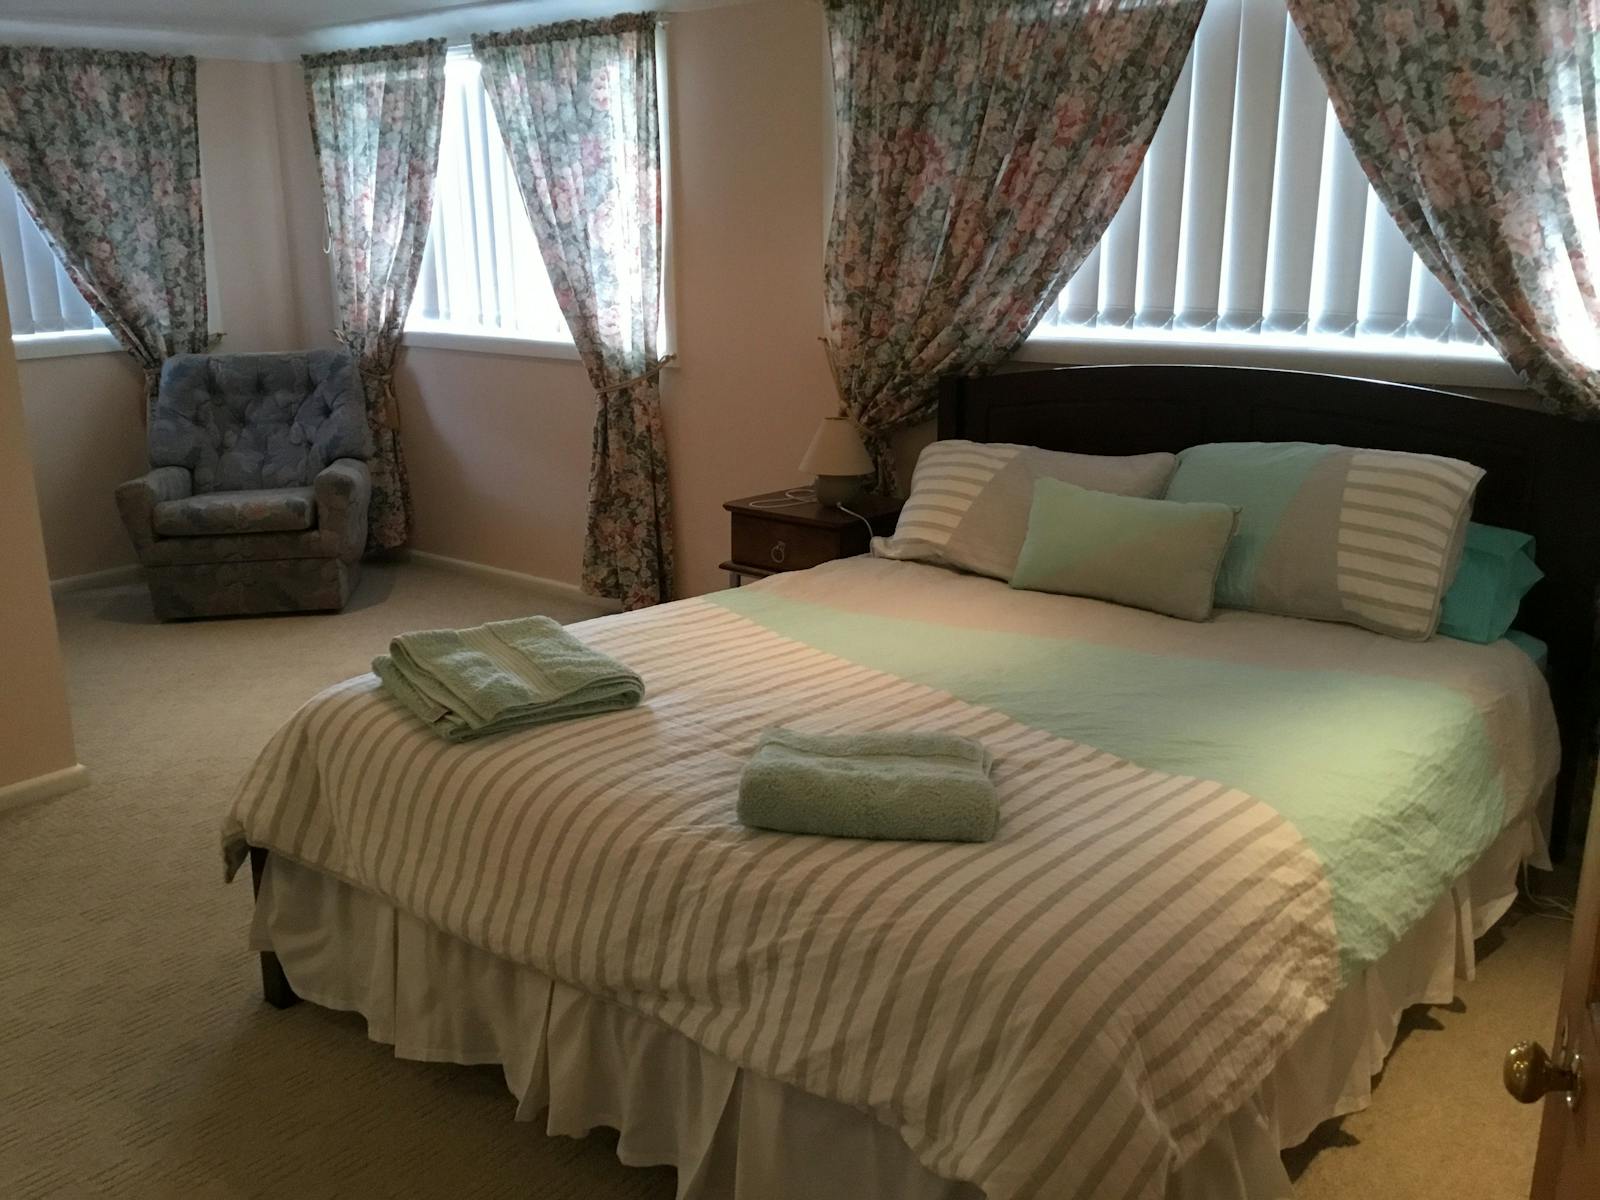 Venterfair Rural Retreat - Bedroom1 Queen